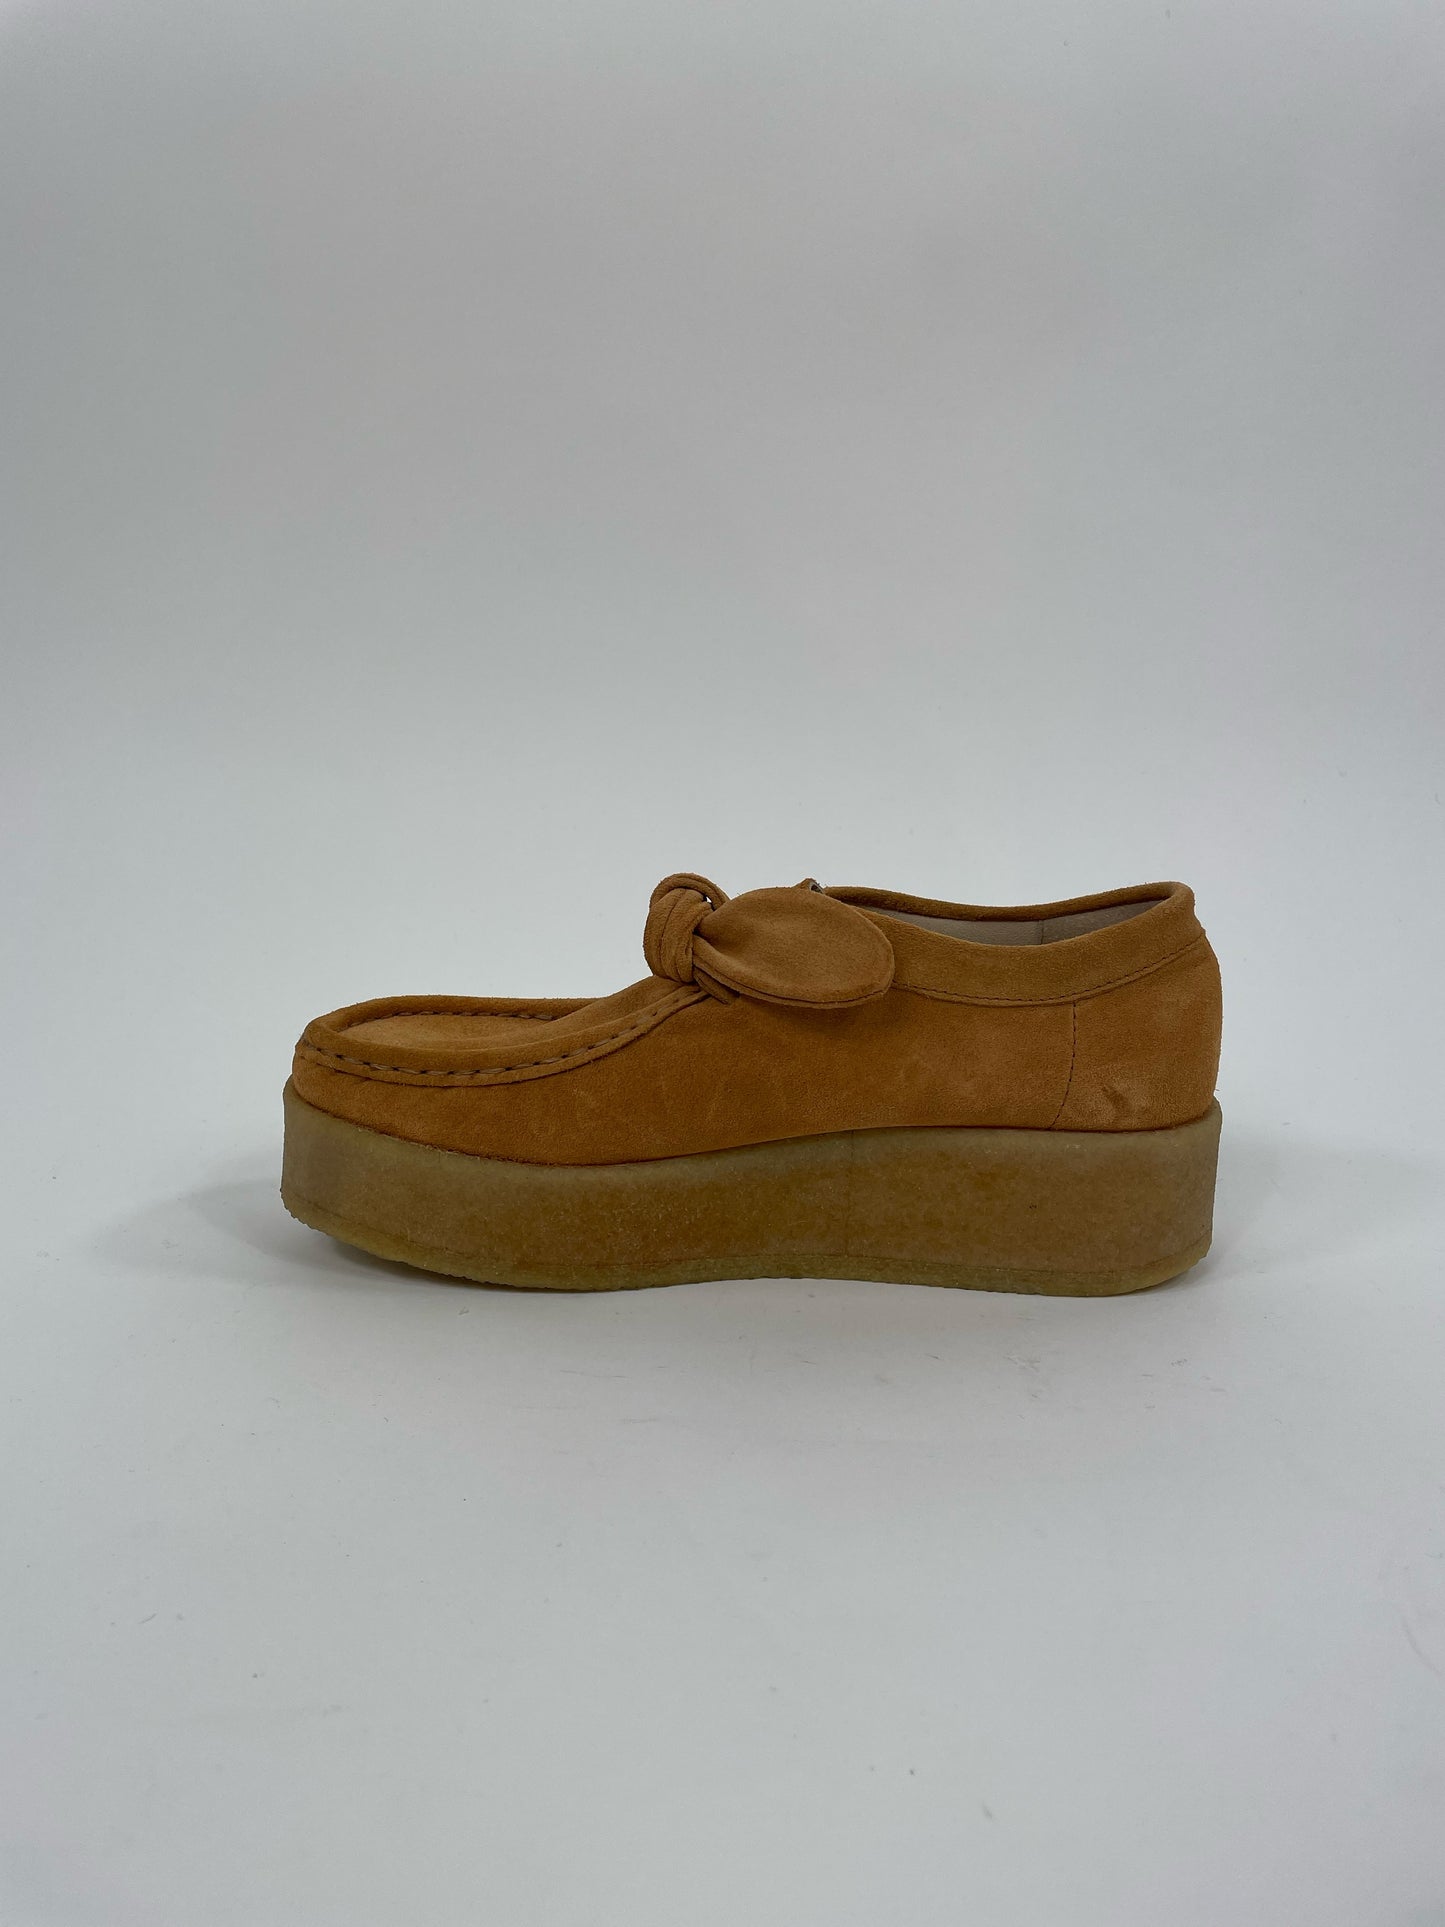 Loeffler Randall Tabitha Knot Chukka Shoe (Size 9)